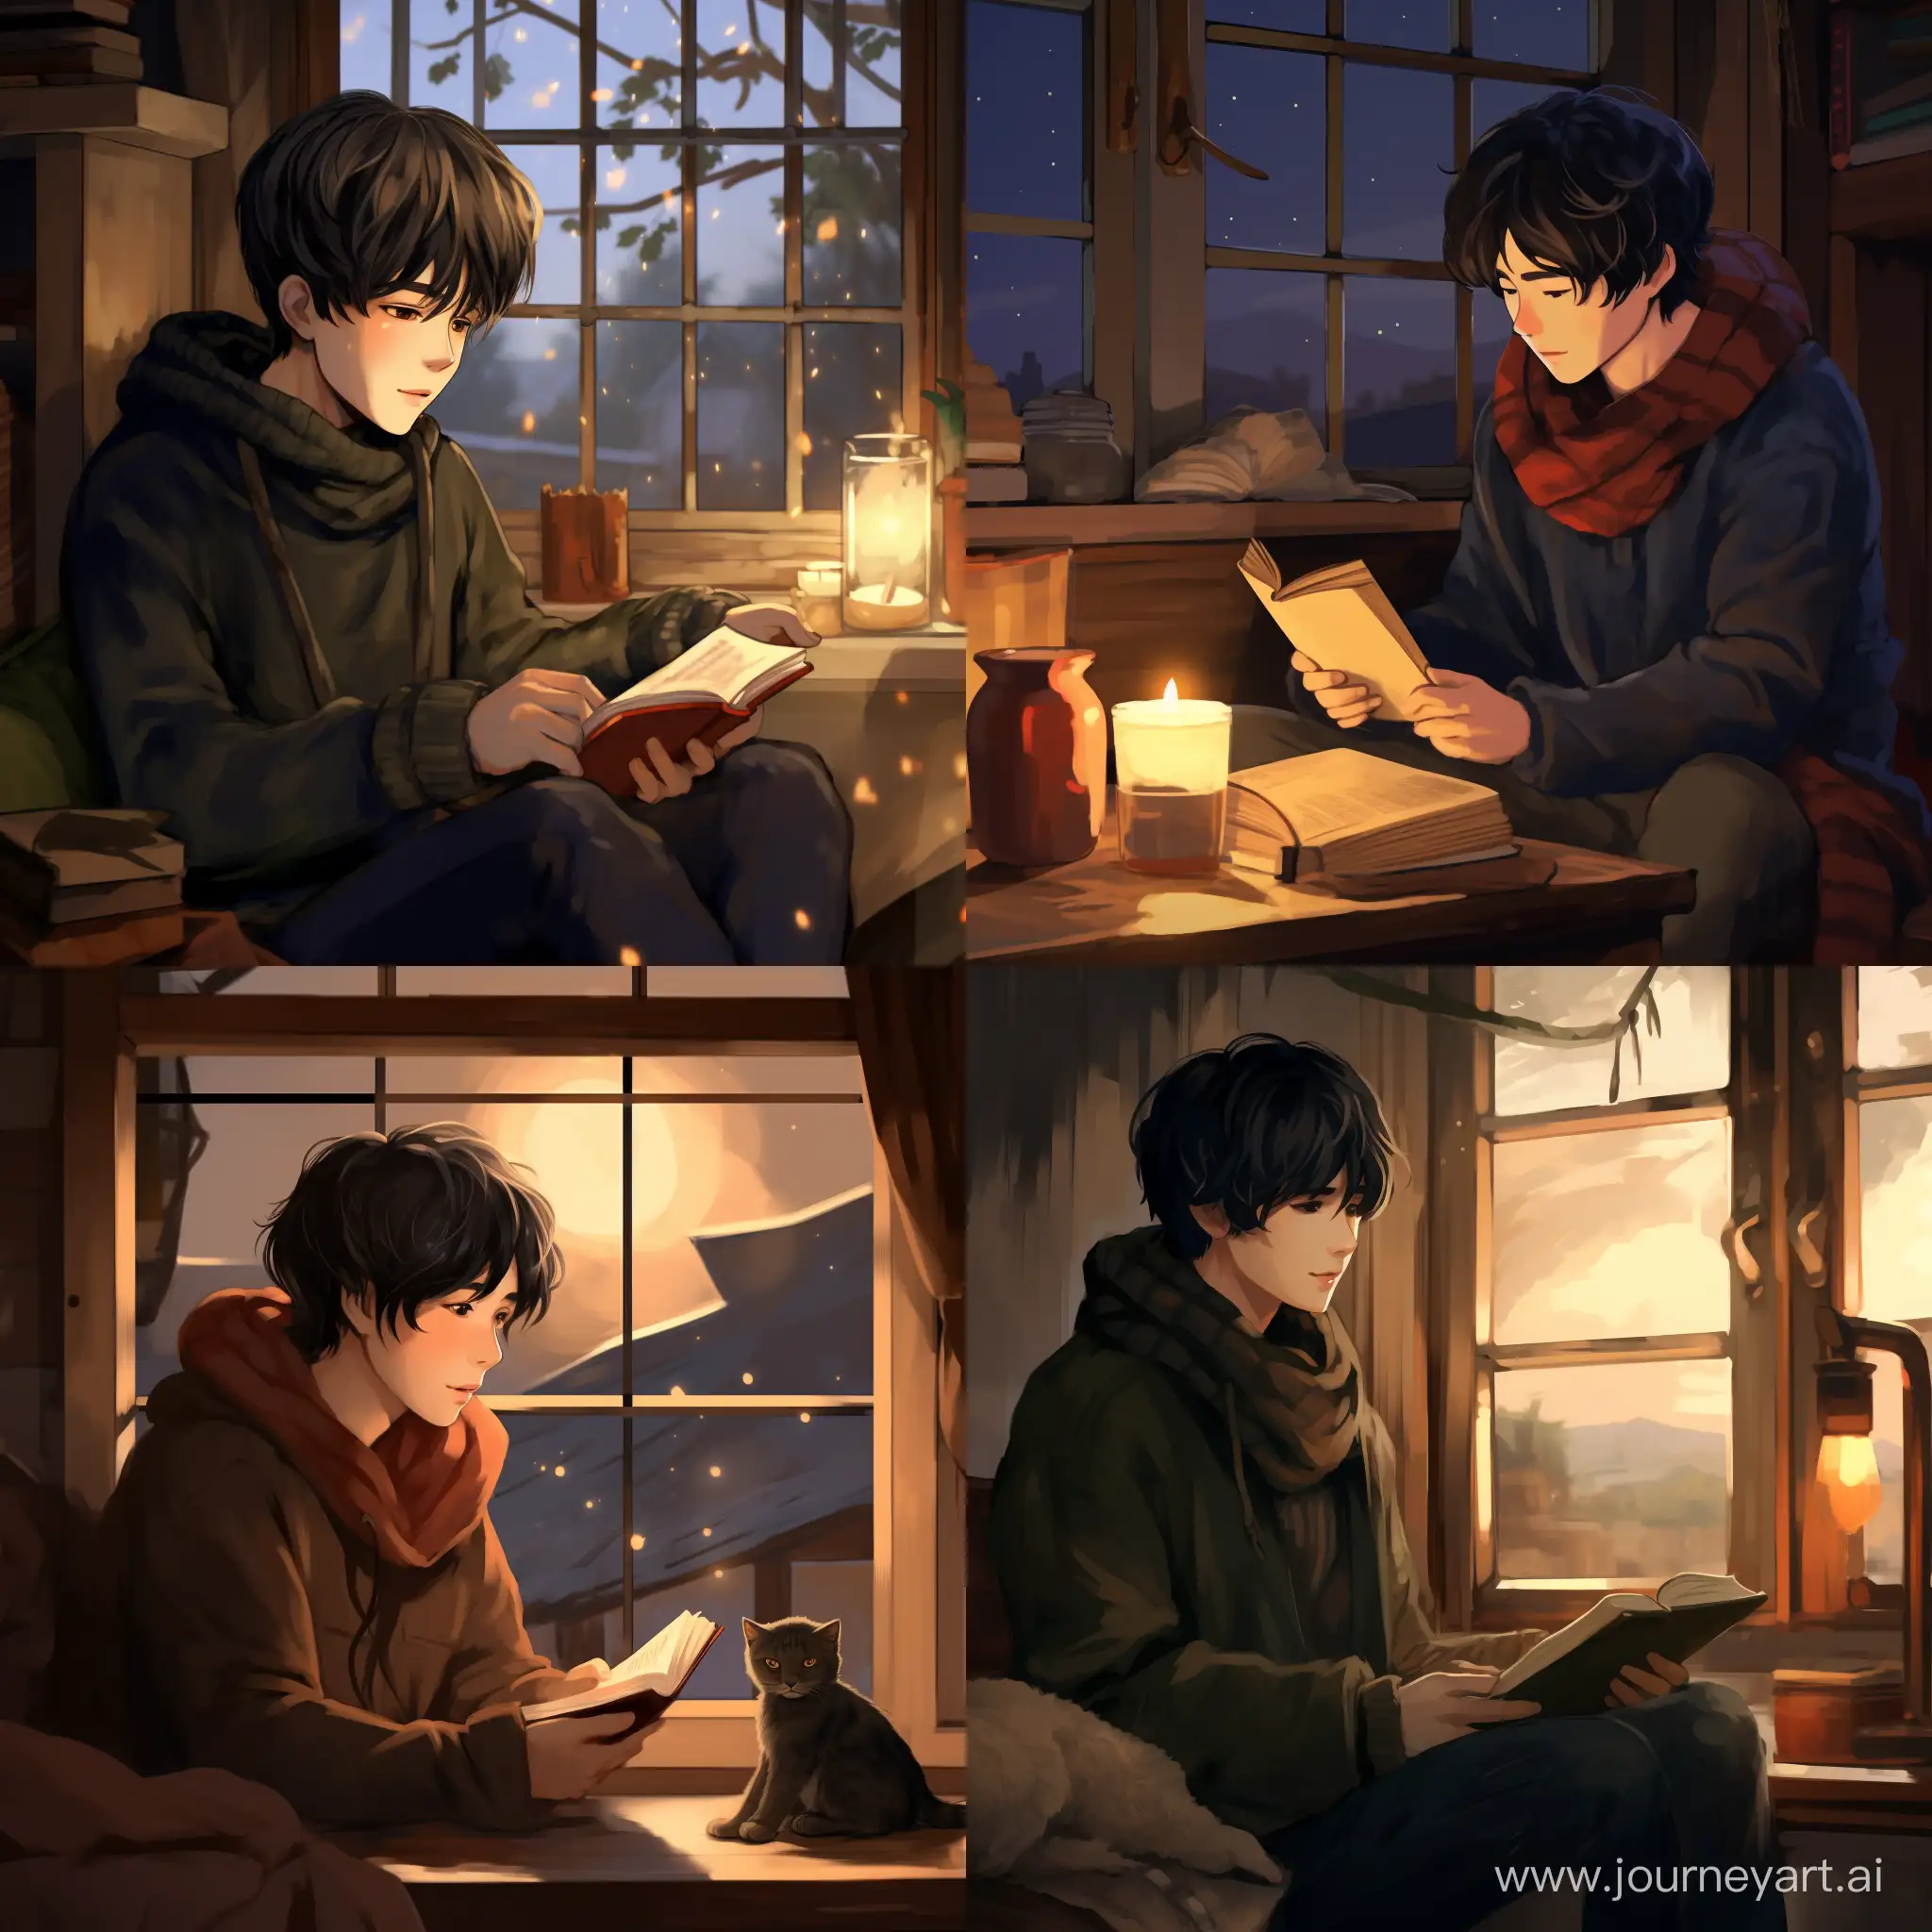 Мин Юнги с тёмными волосами и в шерстяном свитере сидит в деревянном деревенском доме, читает книгу. Рядом с ним стоит керосиновая лампа и окно. На улице уже темно.